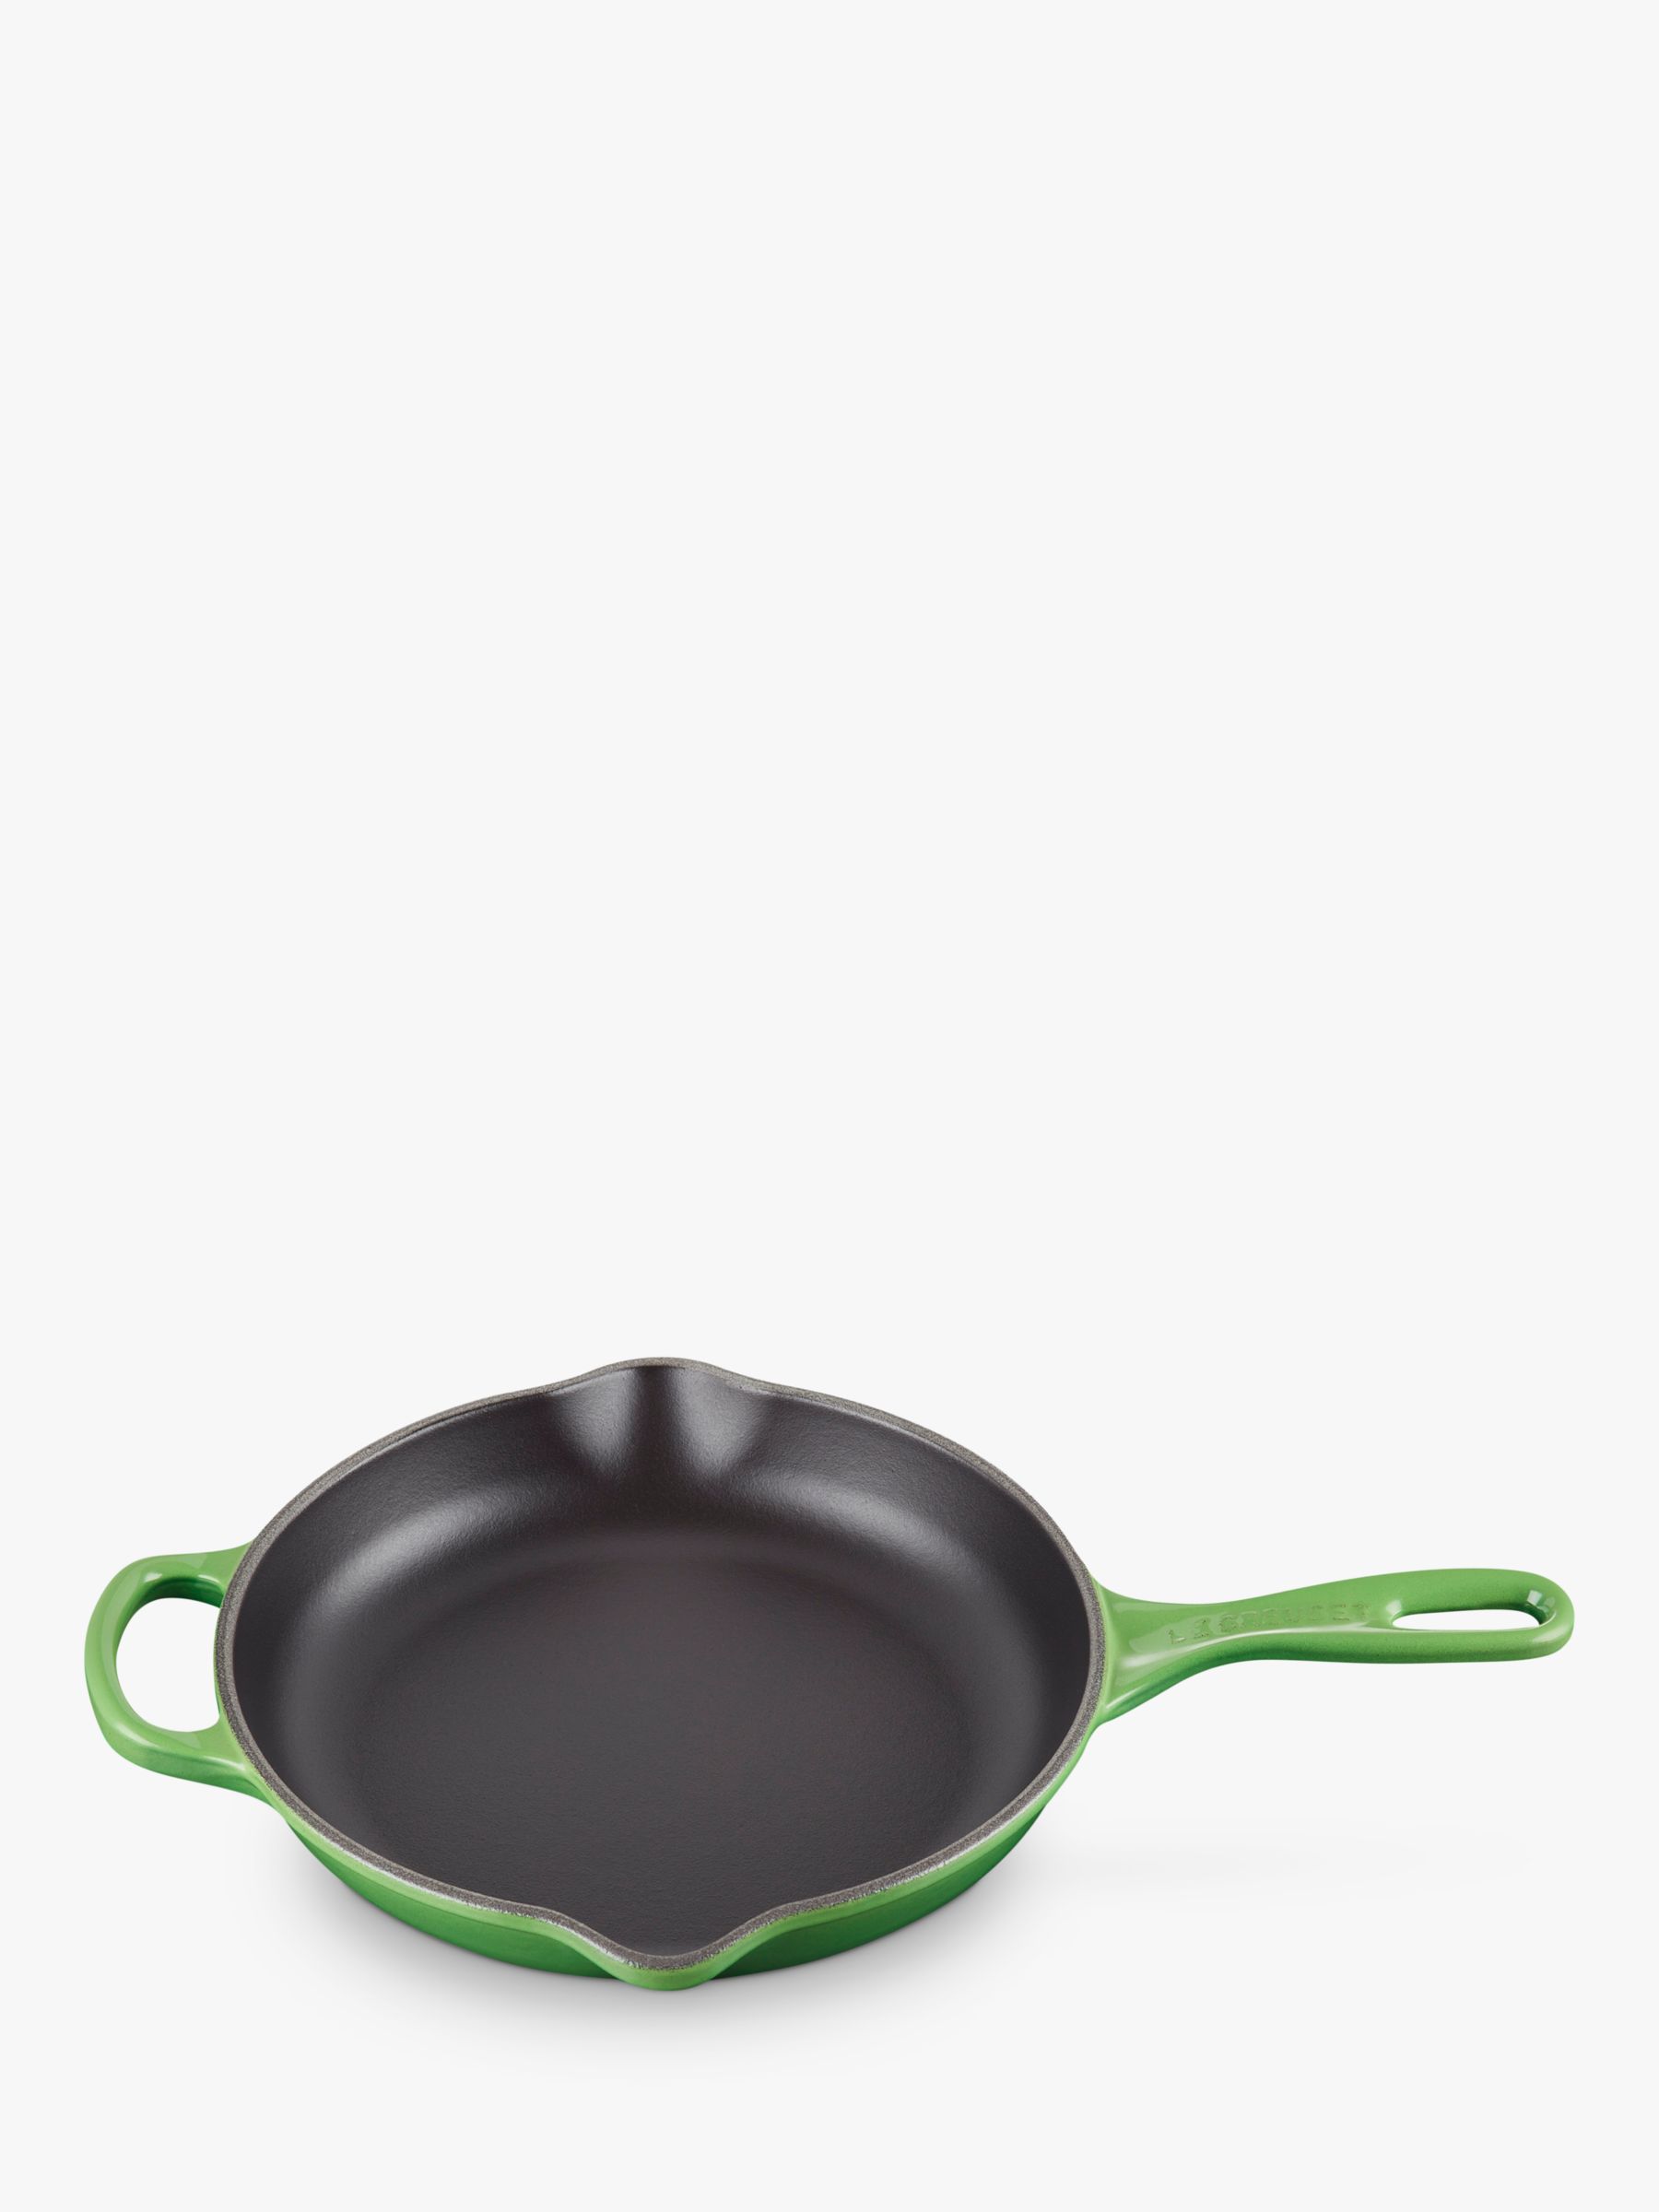 Pot Art Cast Iron Induction Griddle Pan, 28cm, Green - KARACA UK